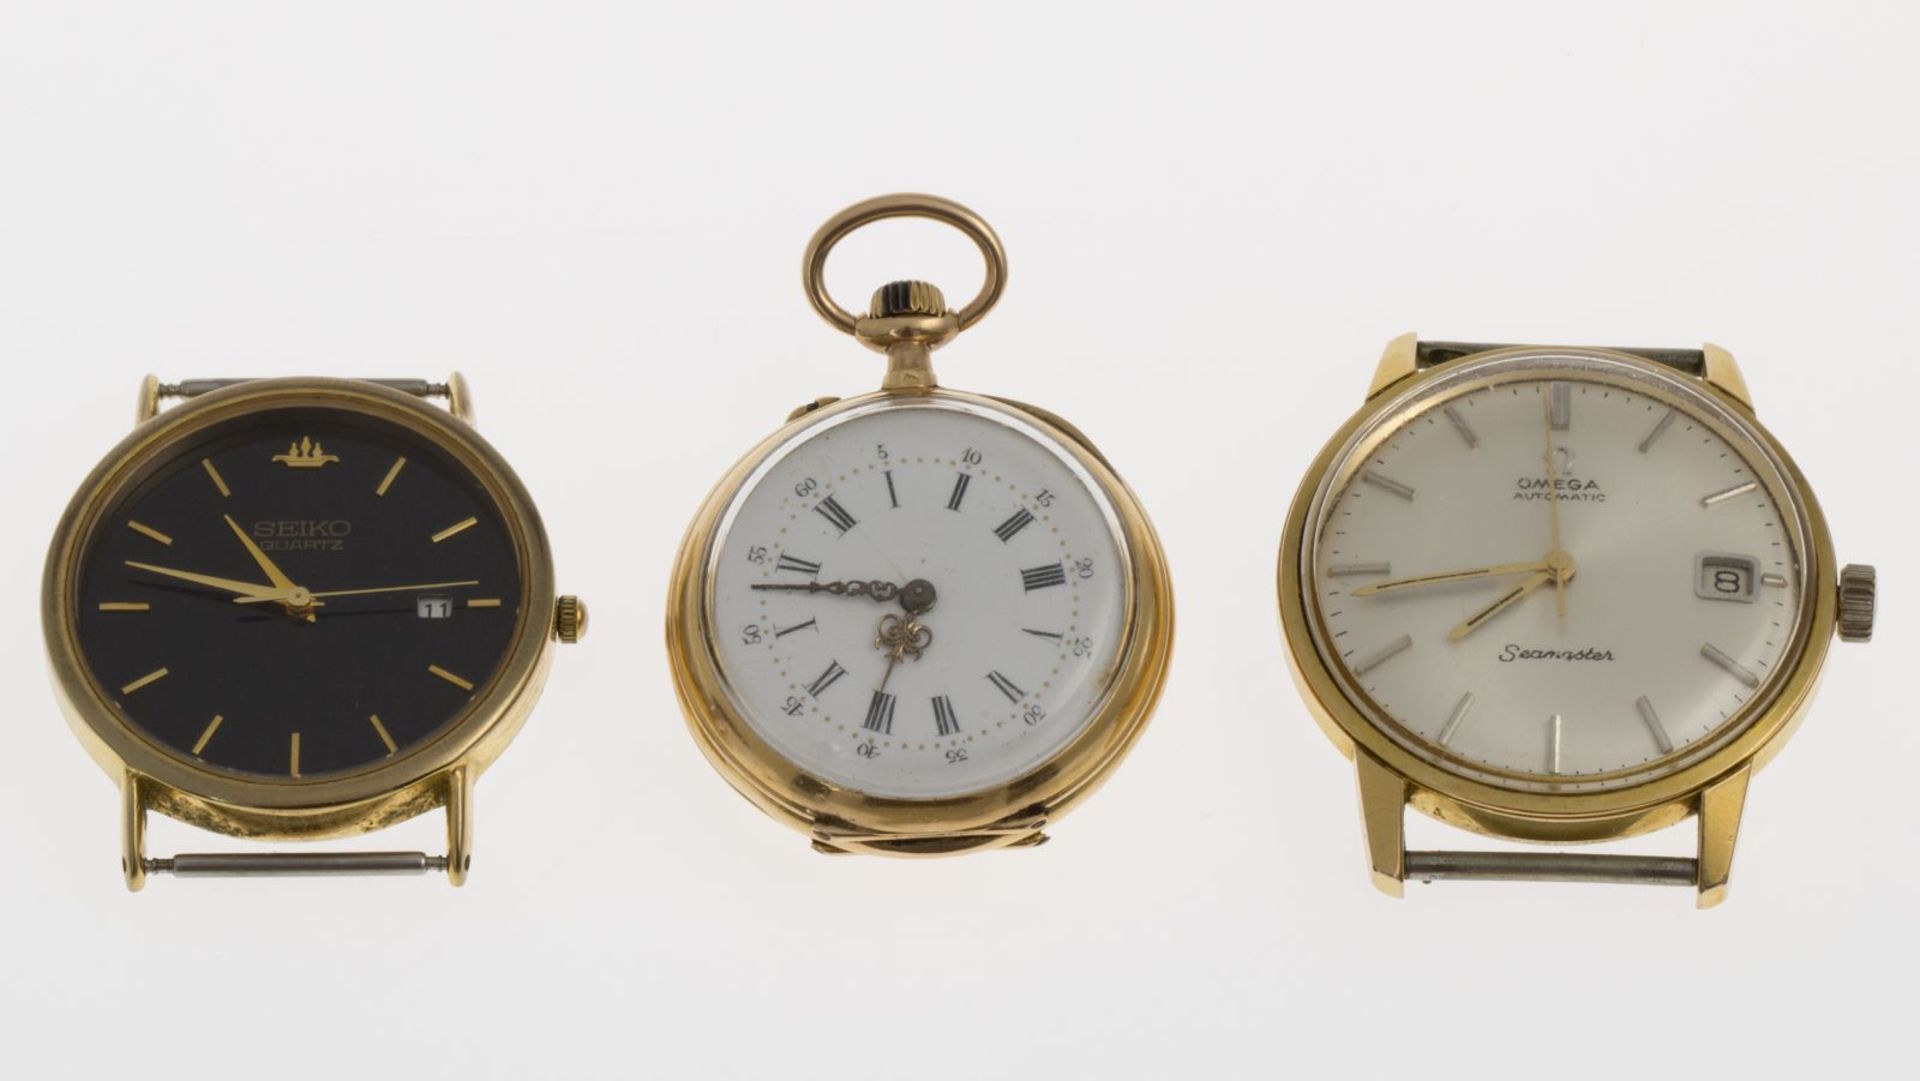 Omega-Armbanduhr Seamaster, Seiko-Armbanduhr und DamentaschenuhrGehäuse aus Stahl, partiell